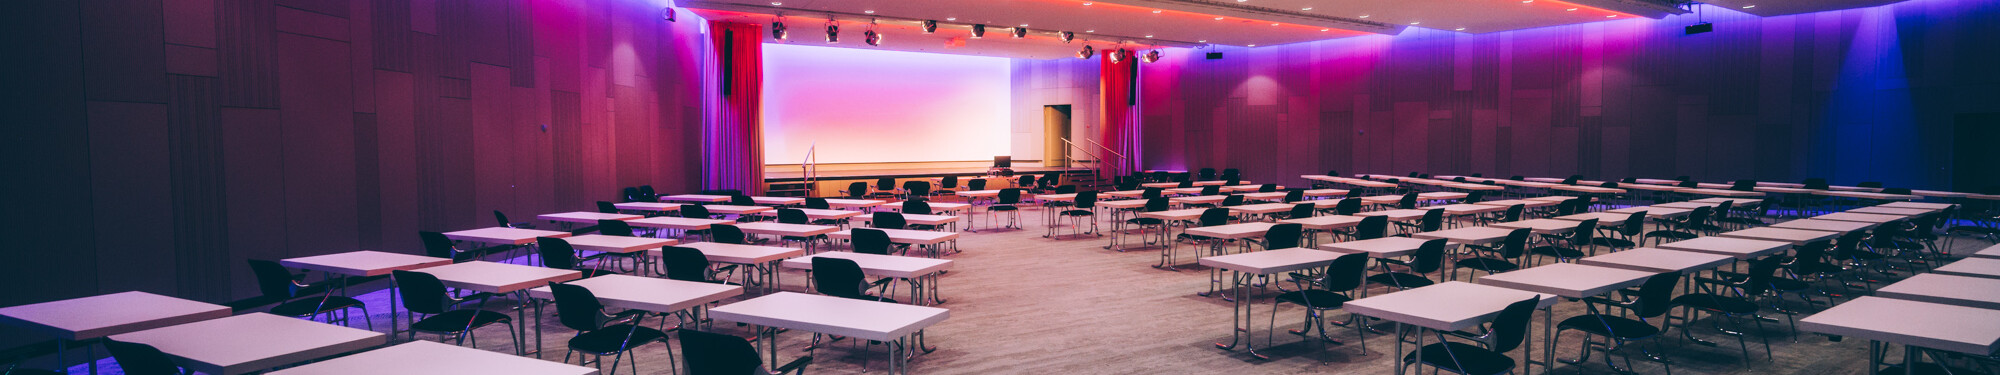 Stühle und Tische in einem lila beleuchteten Veranstaltungsraum im CCD Congress Center Düsseldorf